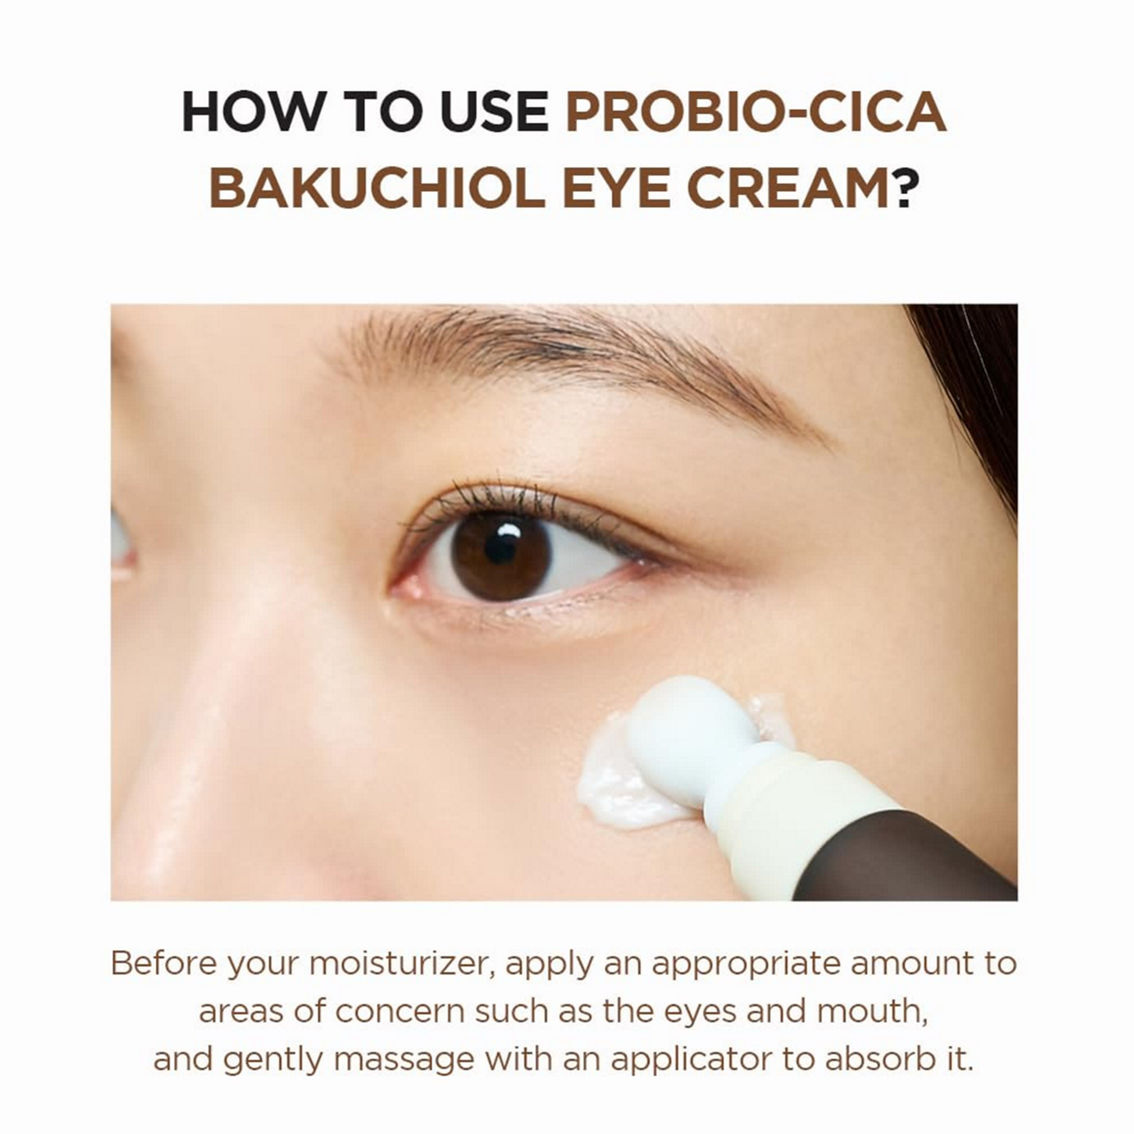 SKIN1004 Madagascar Centella Probio-Cica Bakuchiol Eye Cream 20 ml - Image 2 of 4